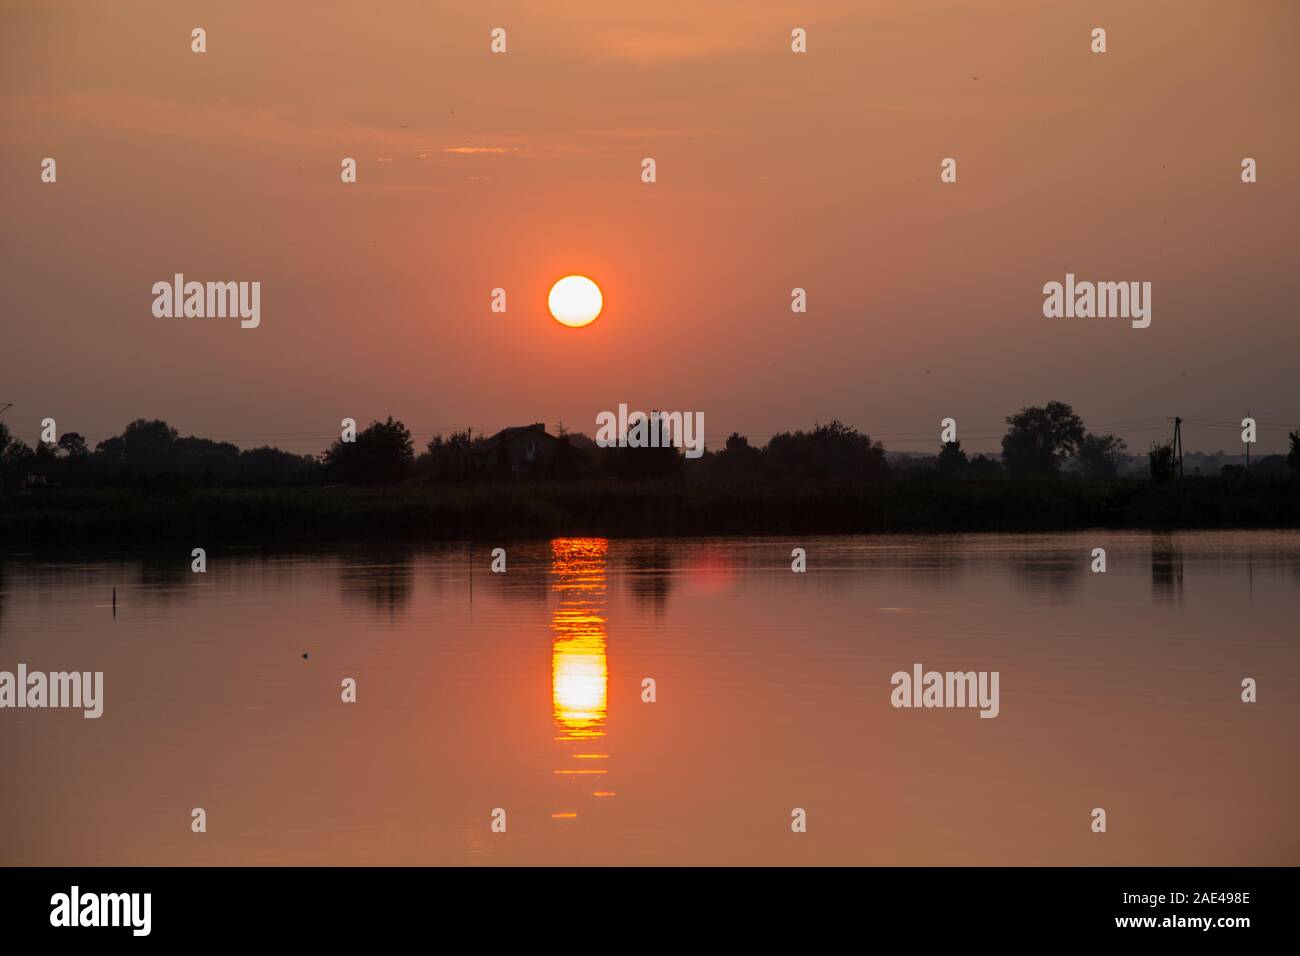 Roter Sonnenuntergang über einem ruhigen See - Reflexion der Sonne im Wasser Stockfoto